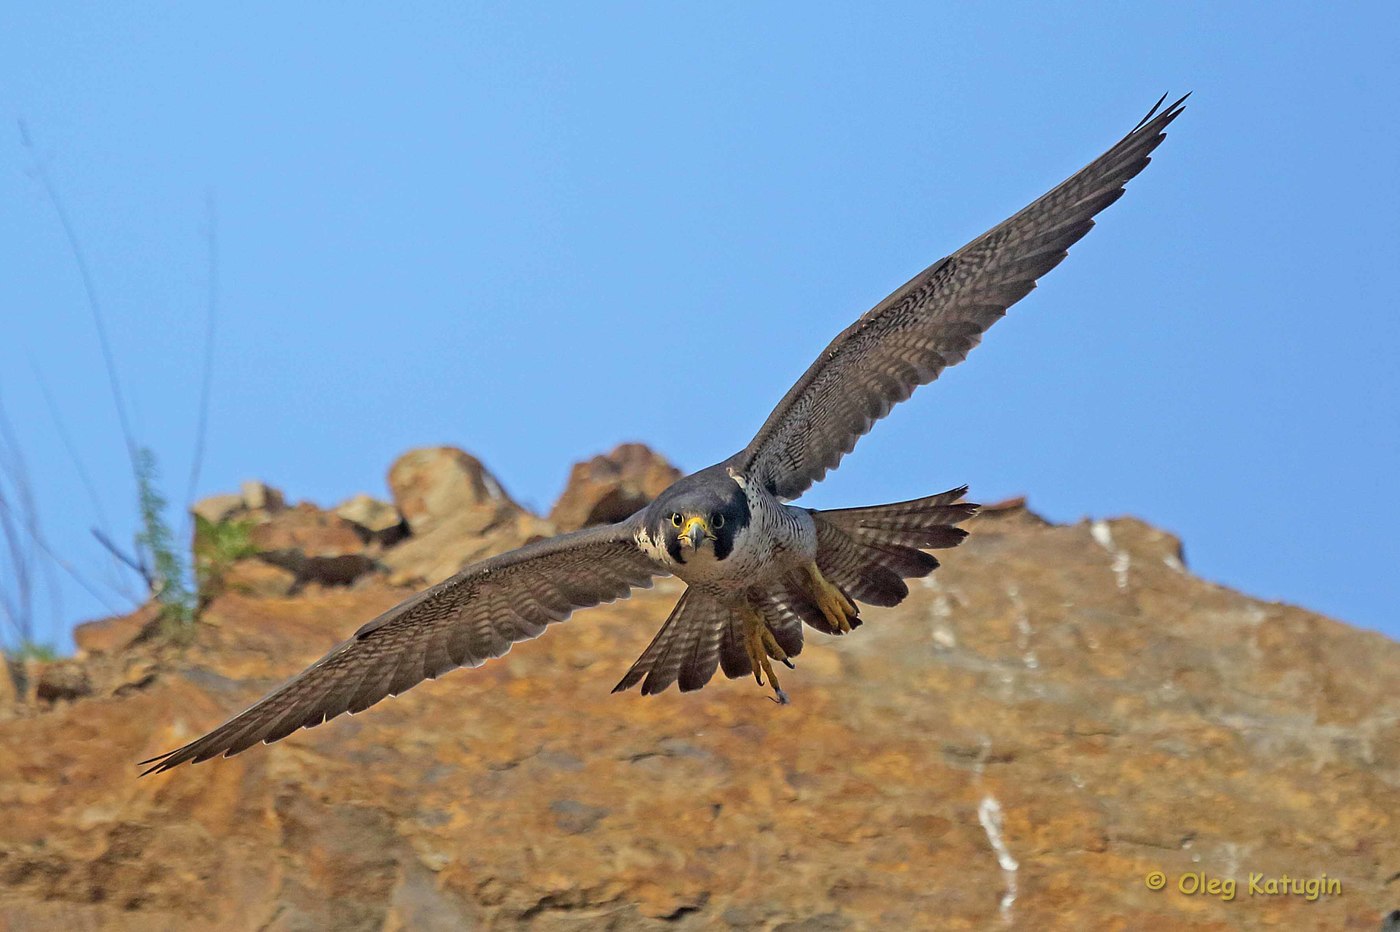 Burung Peregrine Falcon